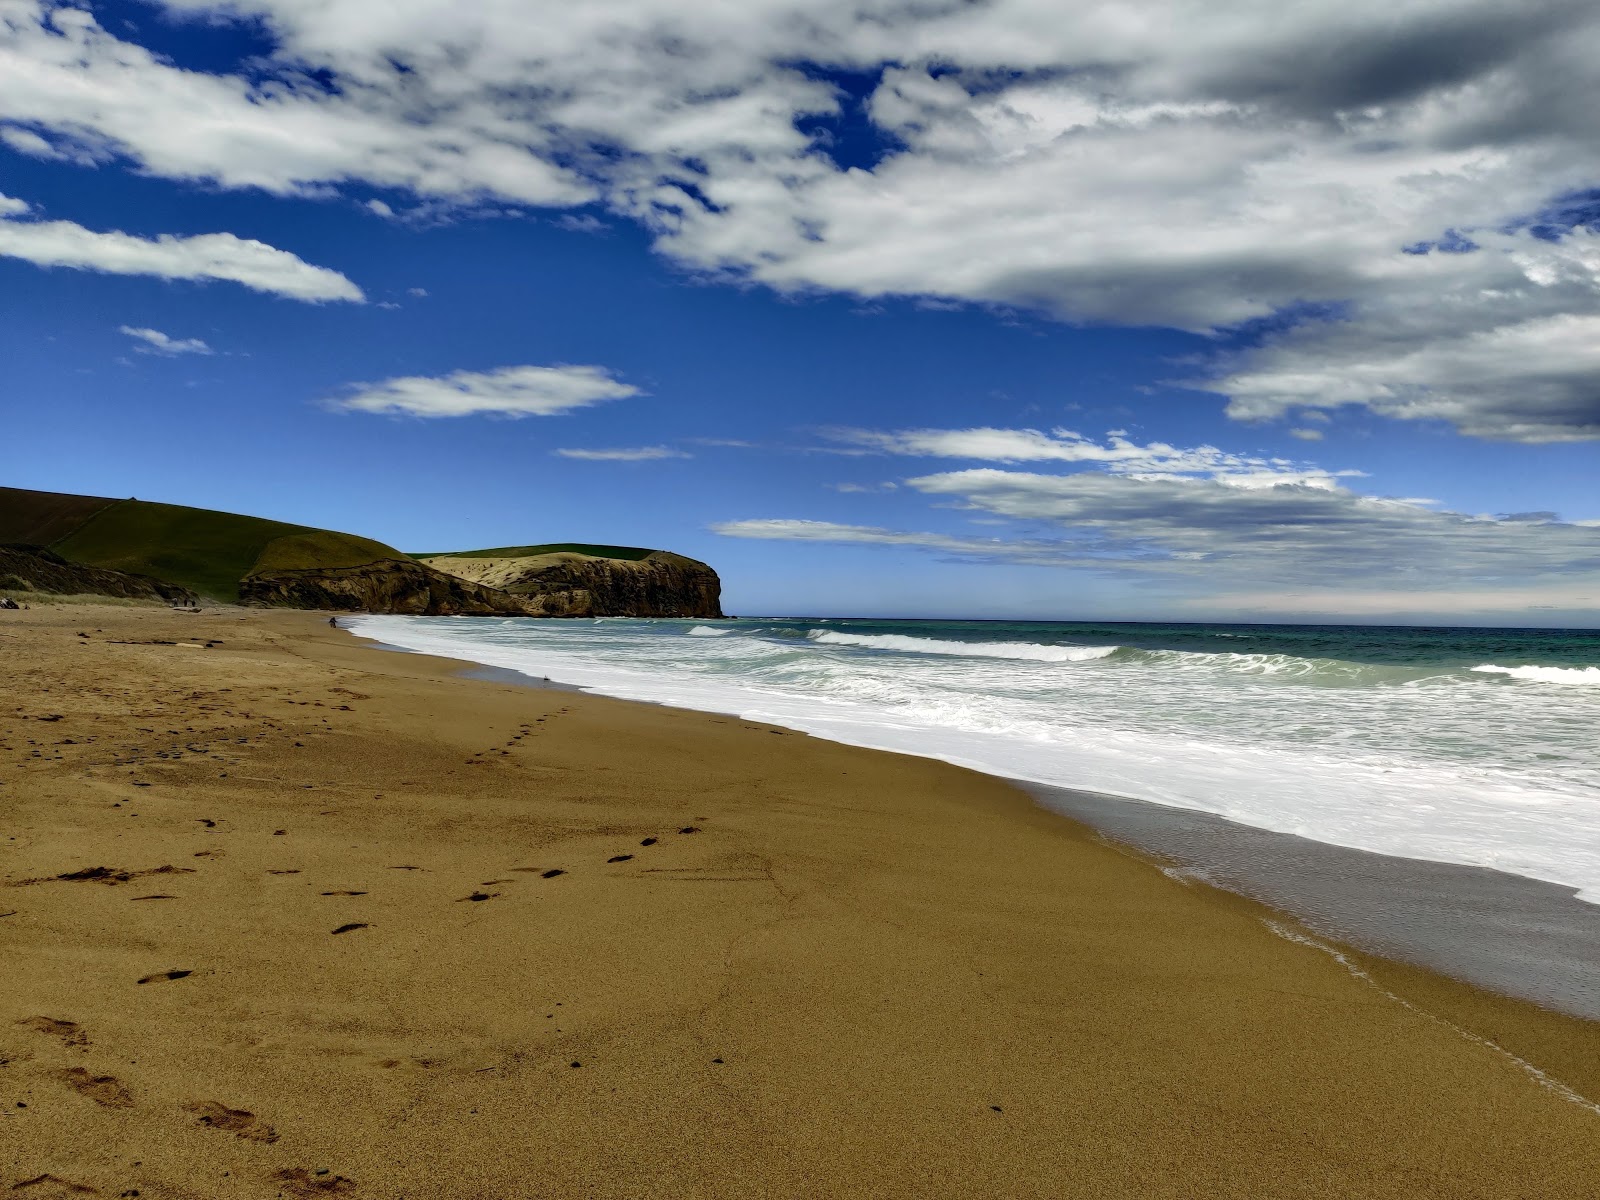 Zdjęcie S14 Beach z powierzchnią jasny piasek